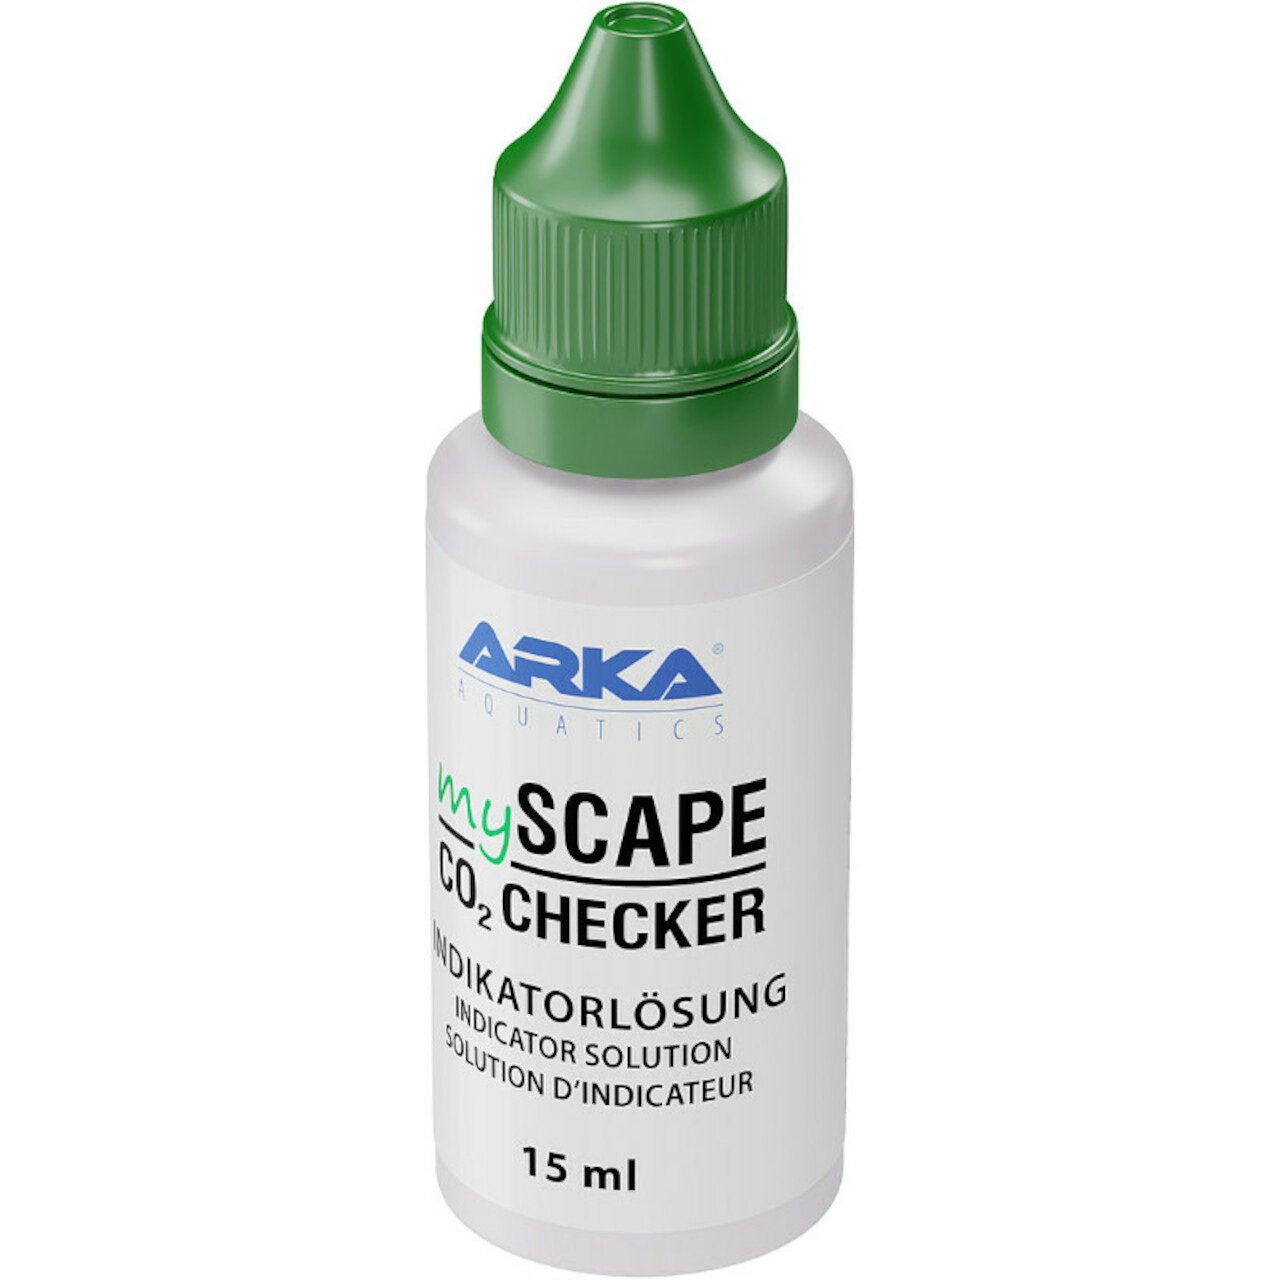 Arka myScape-CO2 Checker